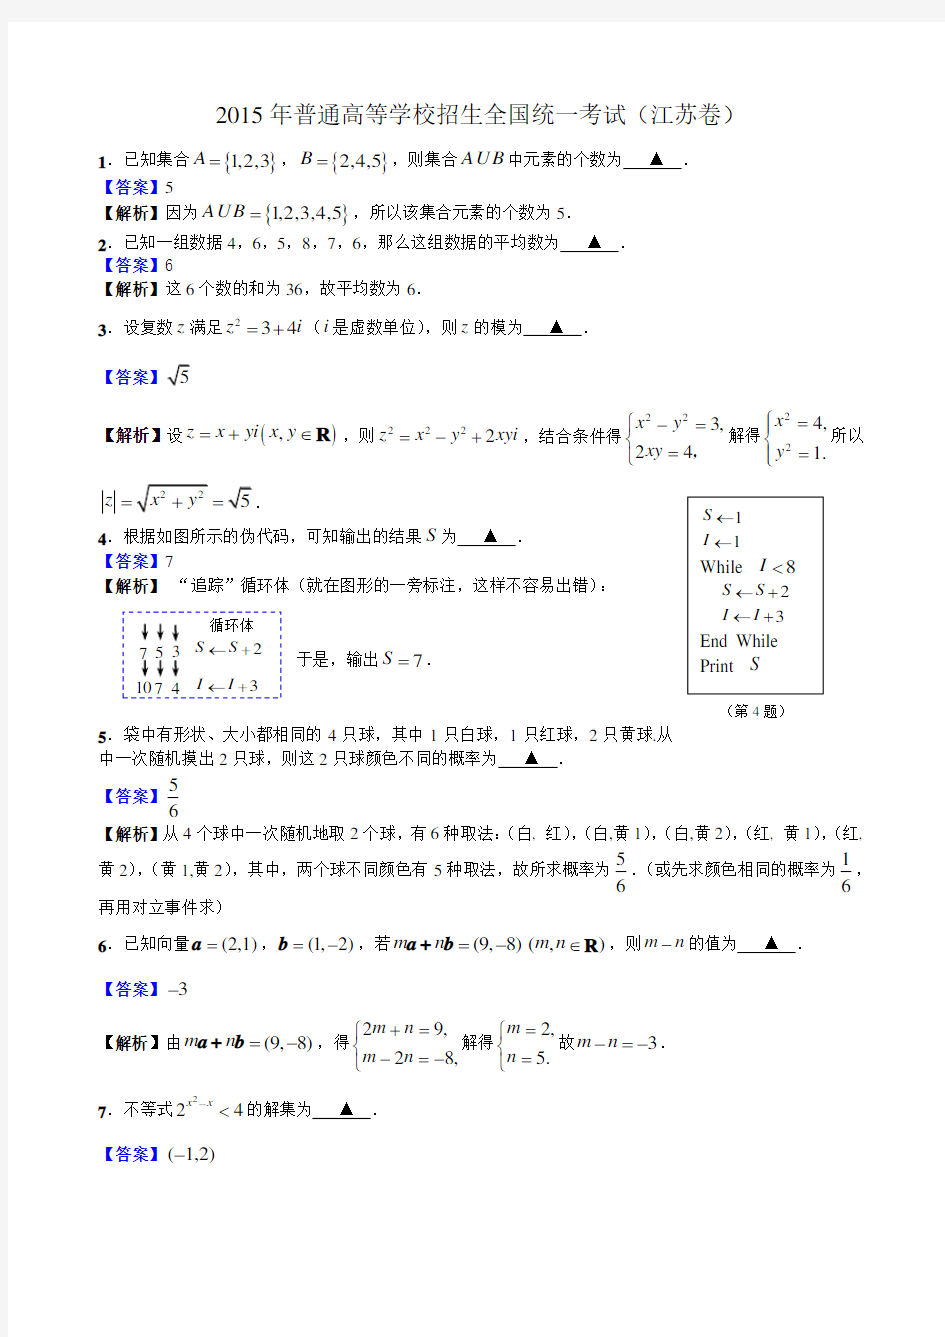 (完整版)2015年高考数学江苏卷